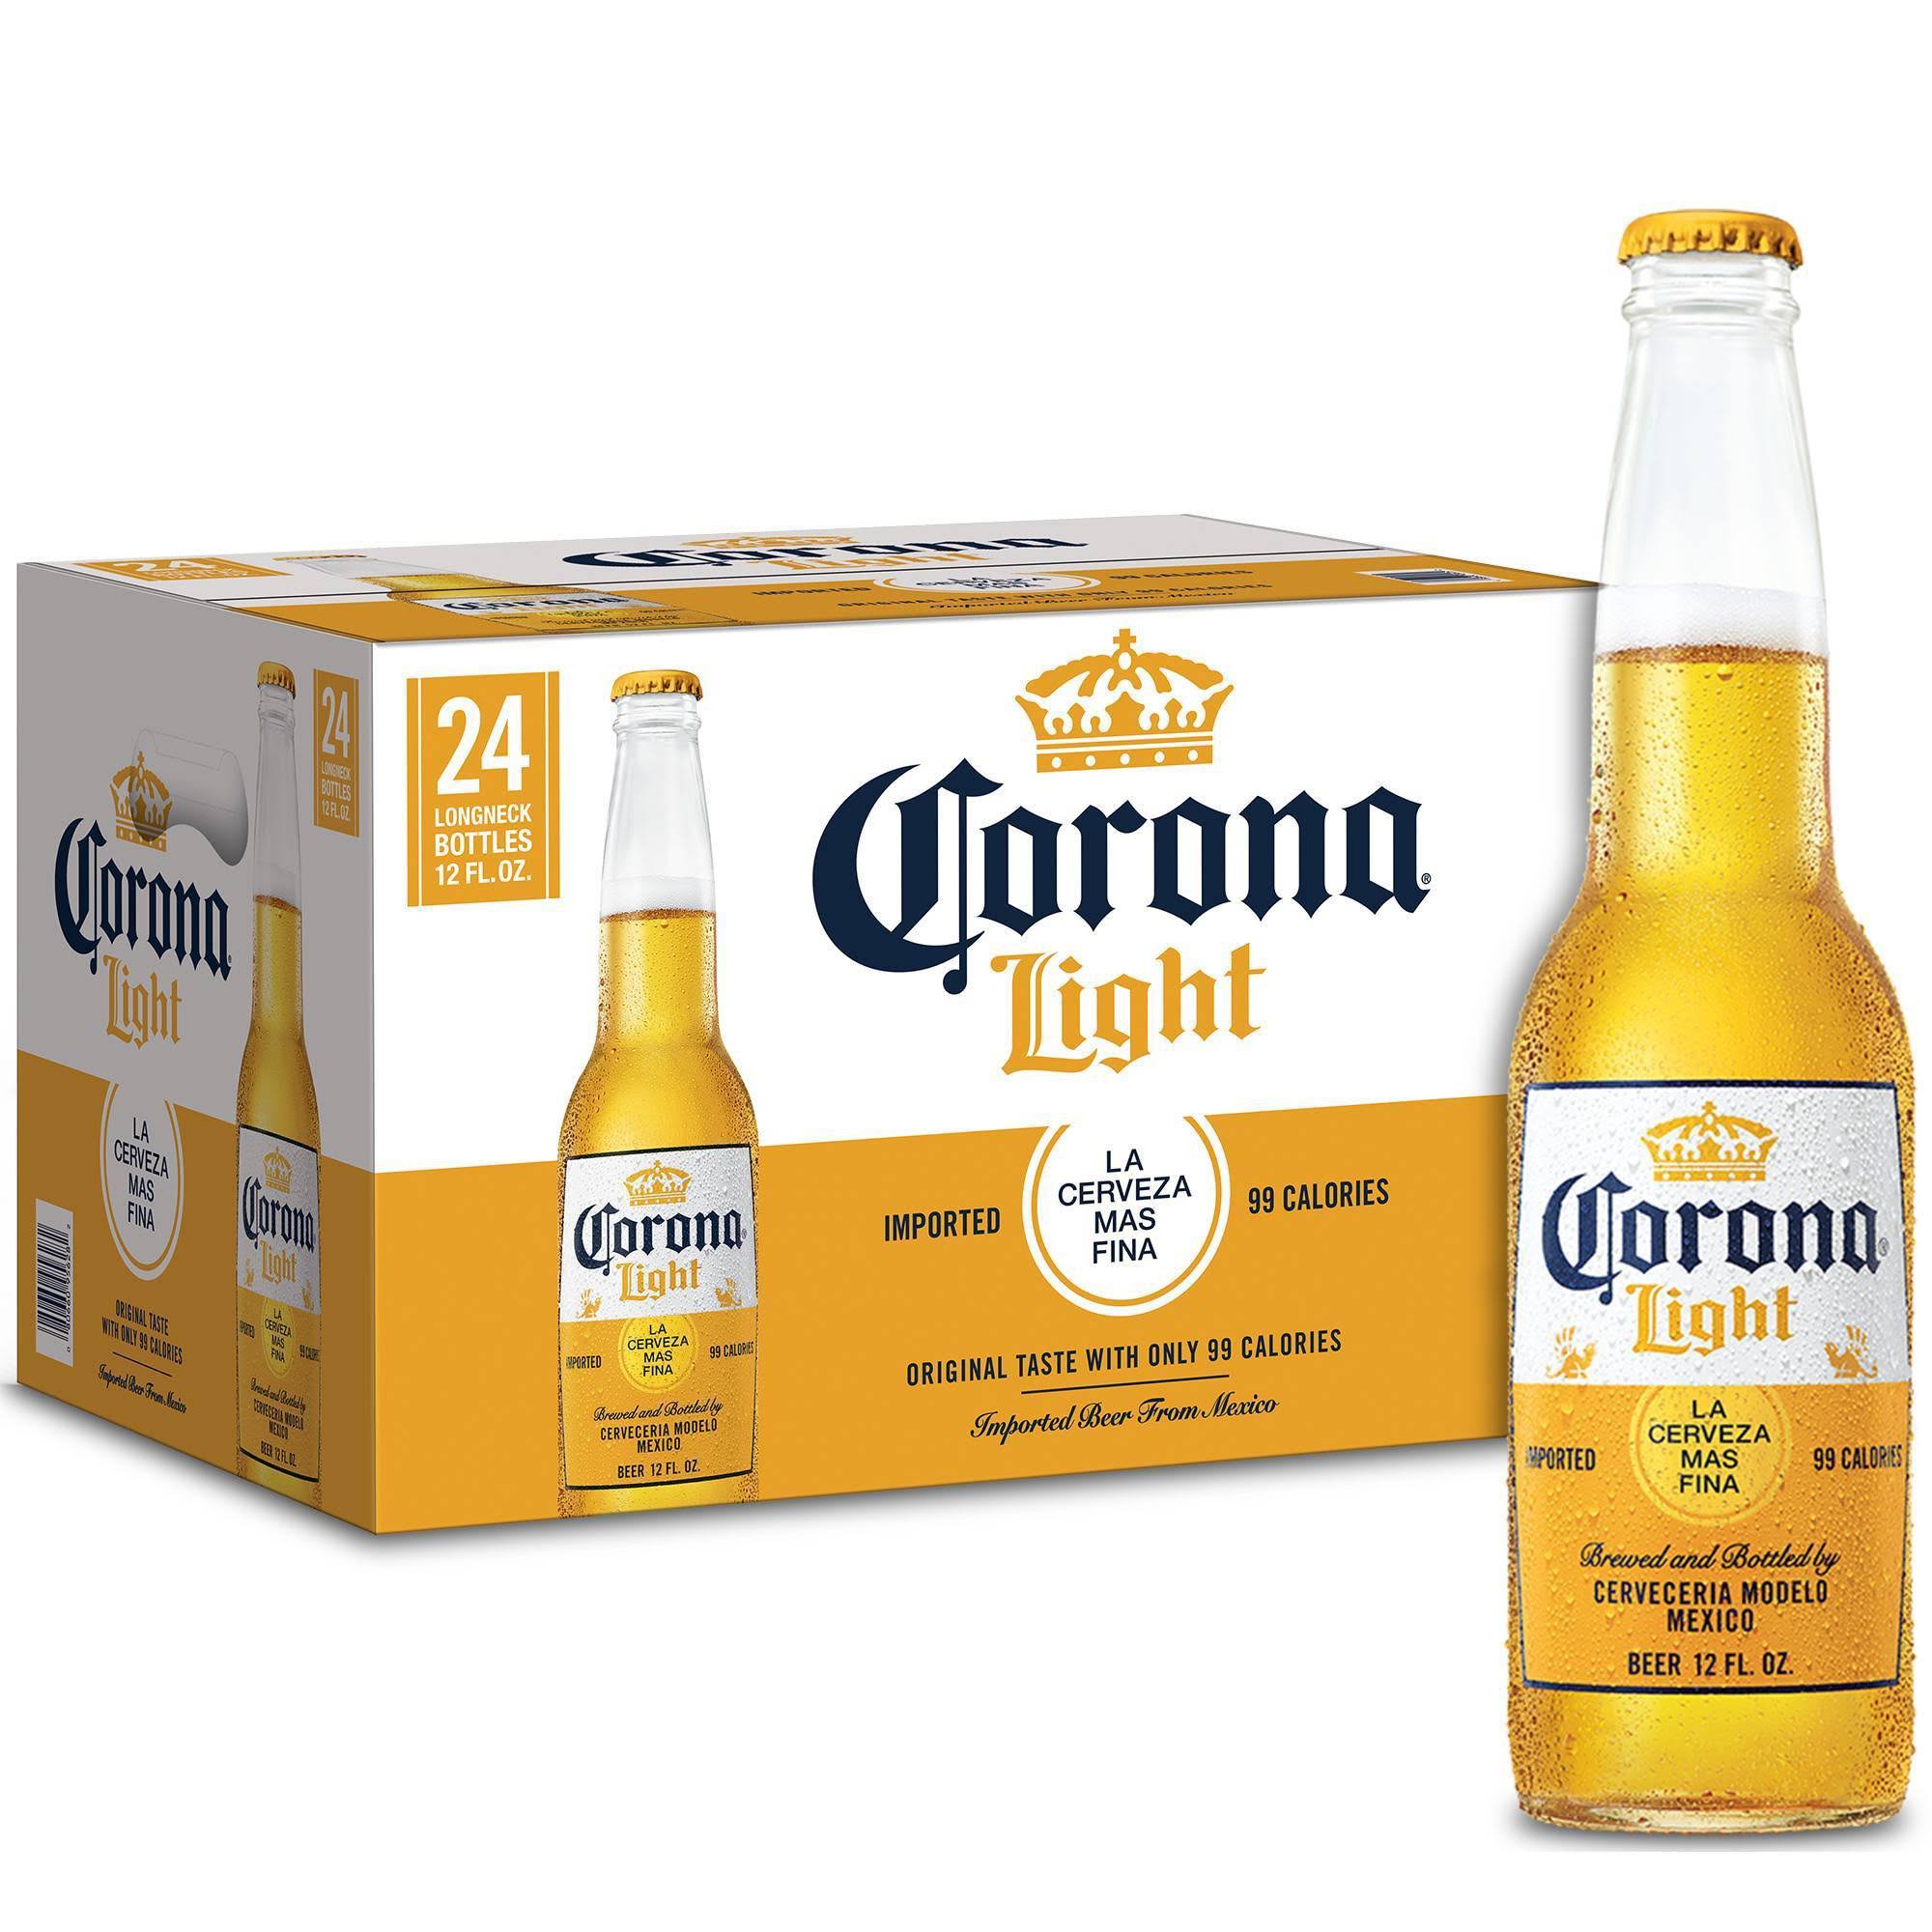 Corona Light Beer - 24 pack, 12 fl oz bottles